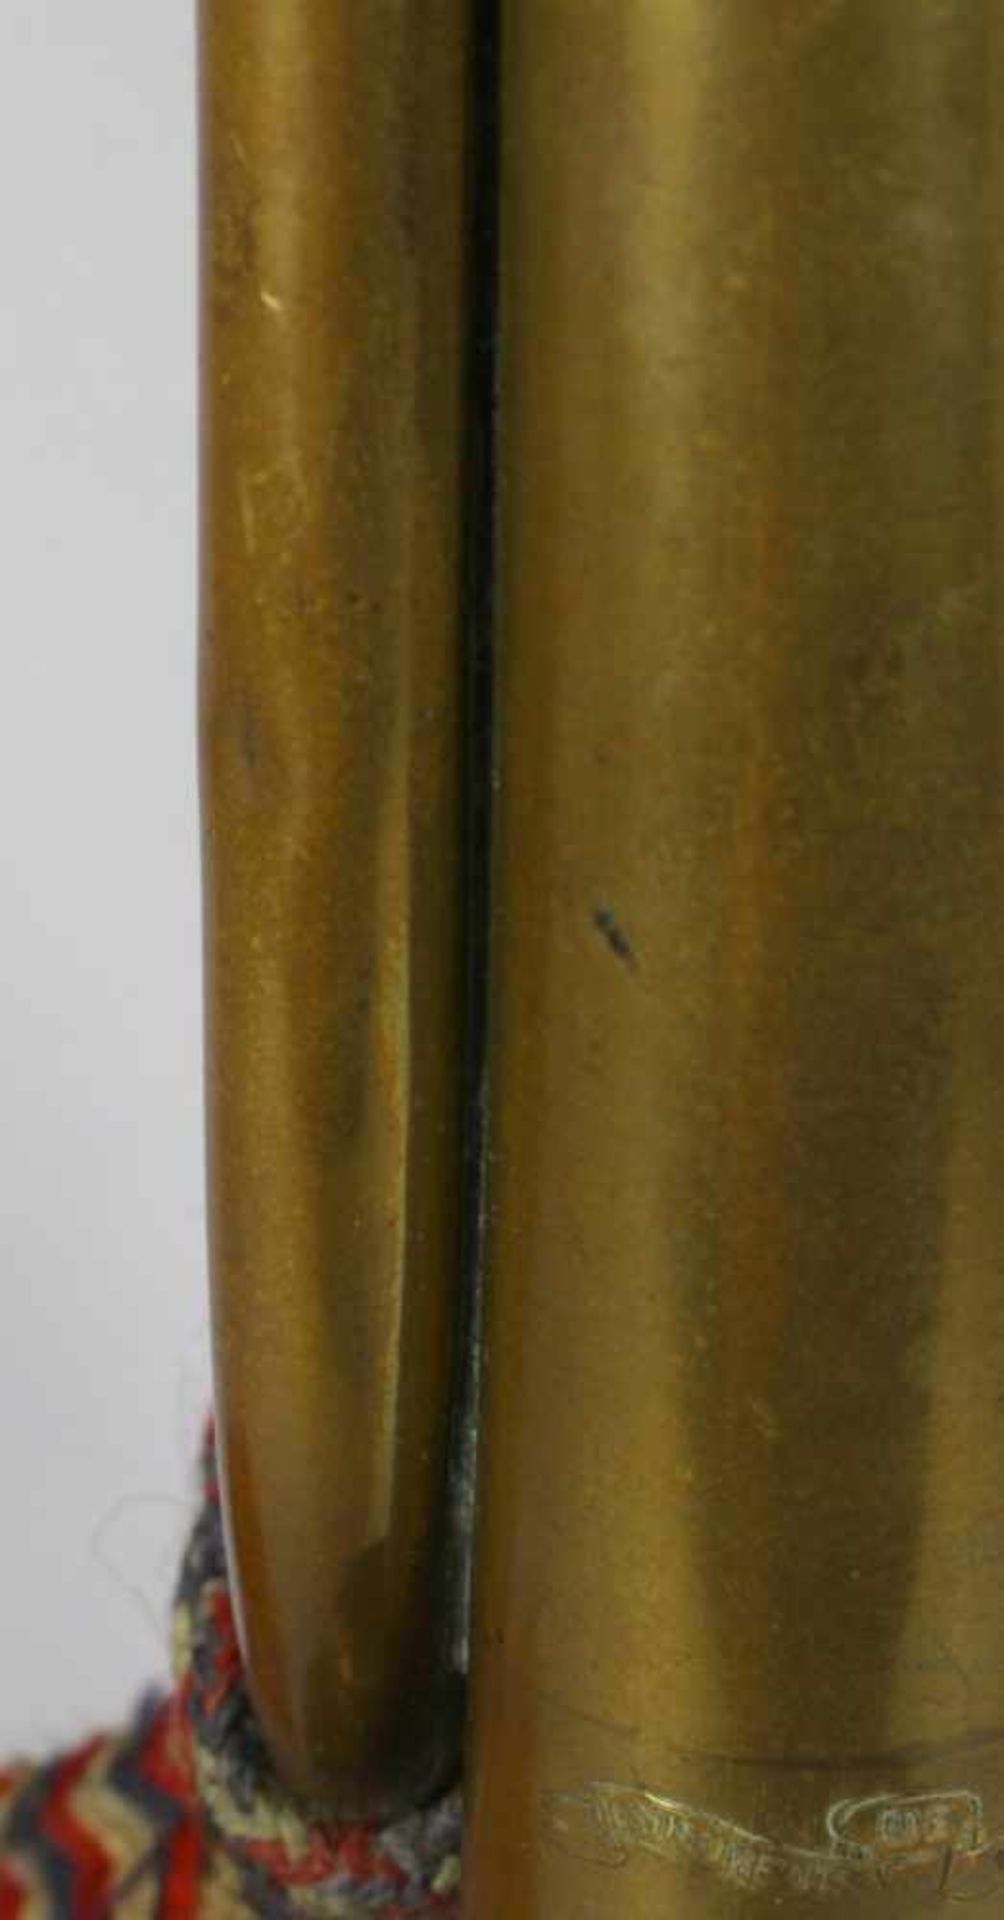 Kavallerie-Trompete, Frankreich, 20. Jh., Messingkorpus mit Weißmetall-Mundstück, gemarkt - Bild 2 aus 3